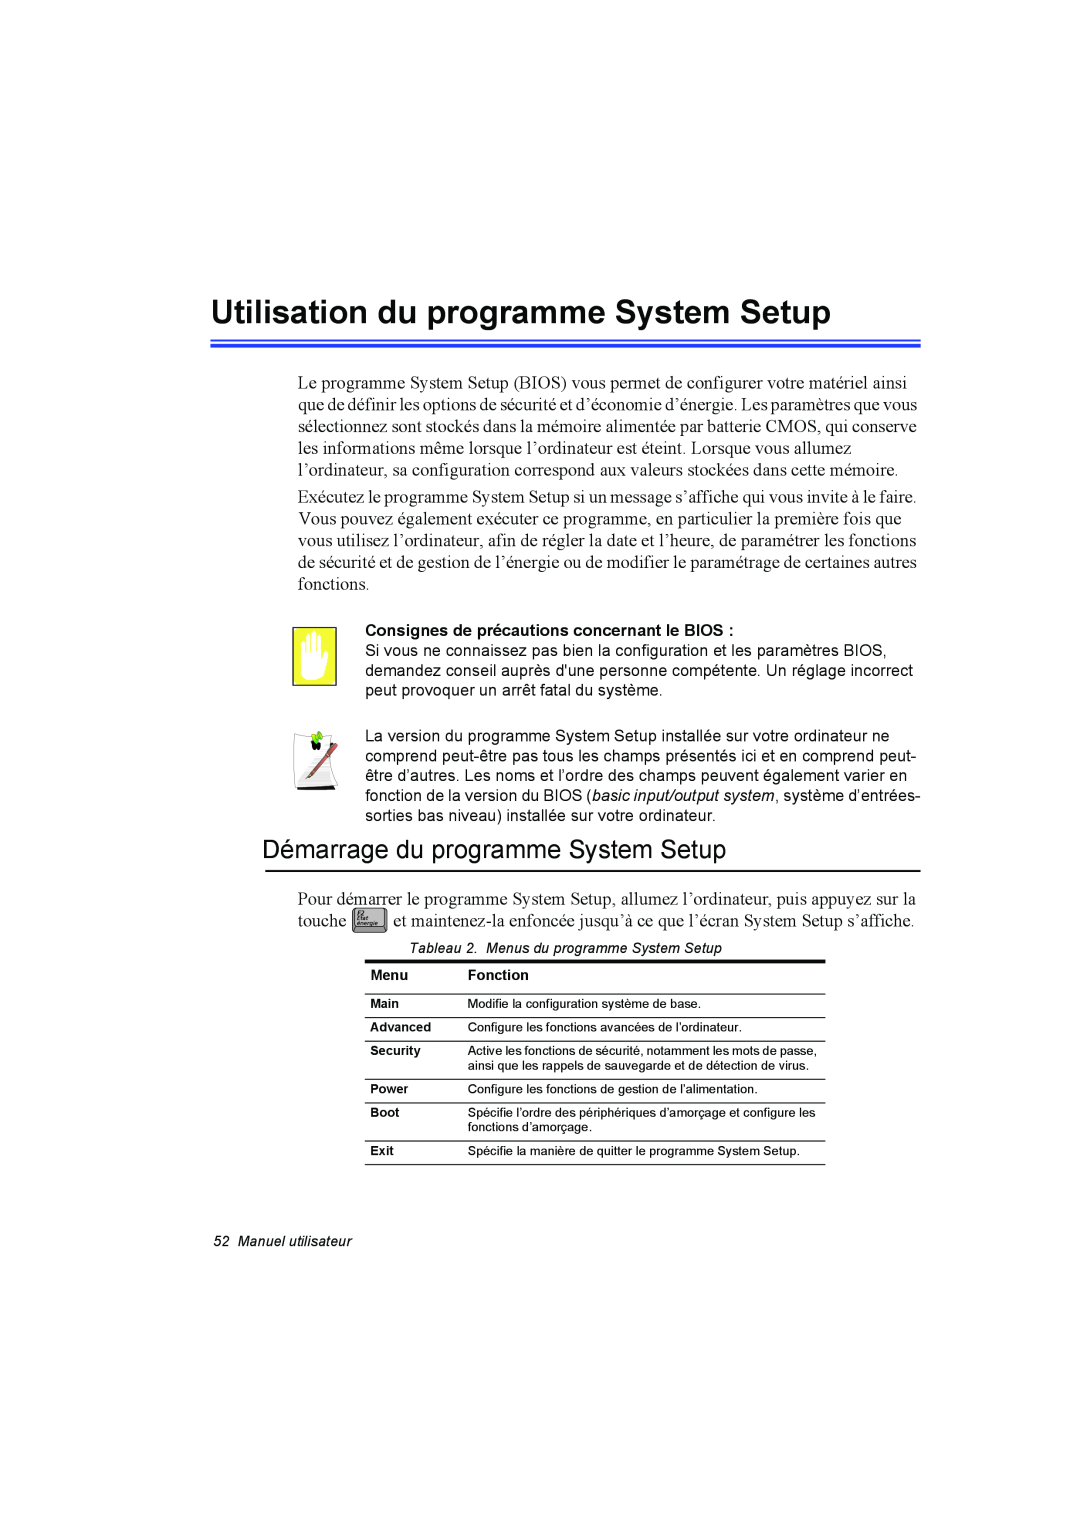 Samsung NP10FK00MF/SEF, NP10FP018N/SEF manual Utilisation du programme System Setup, Démarrage du programme System Setup 